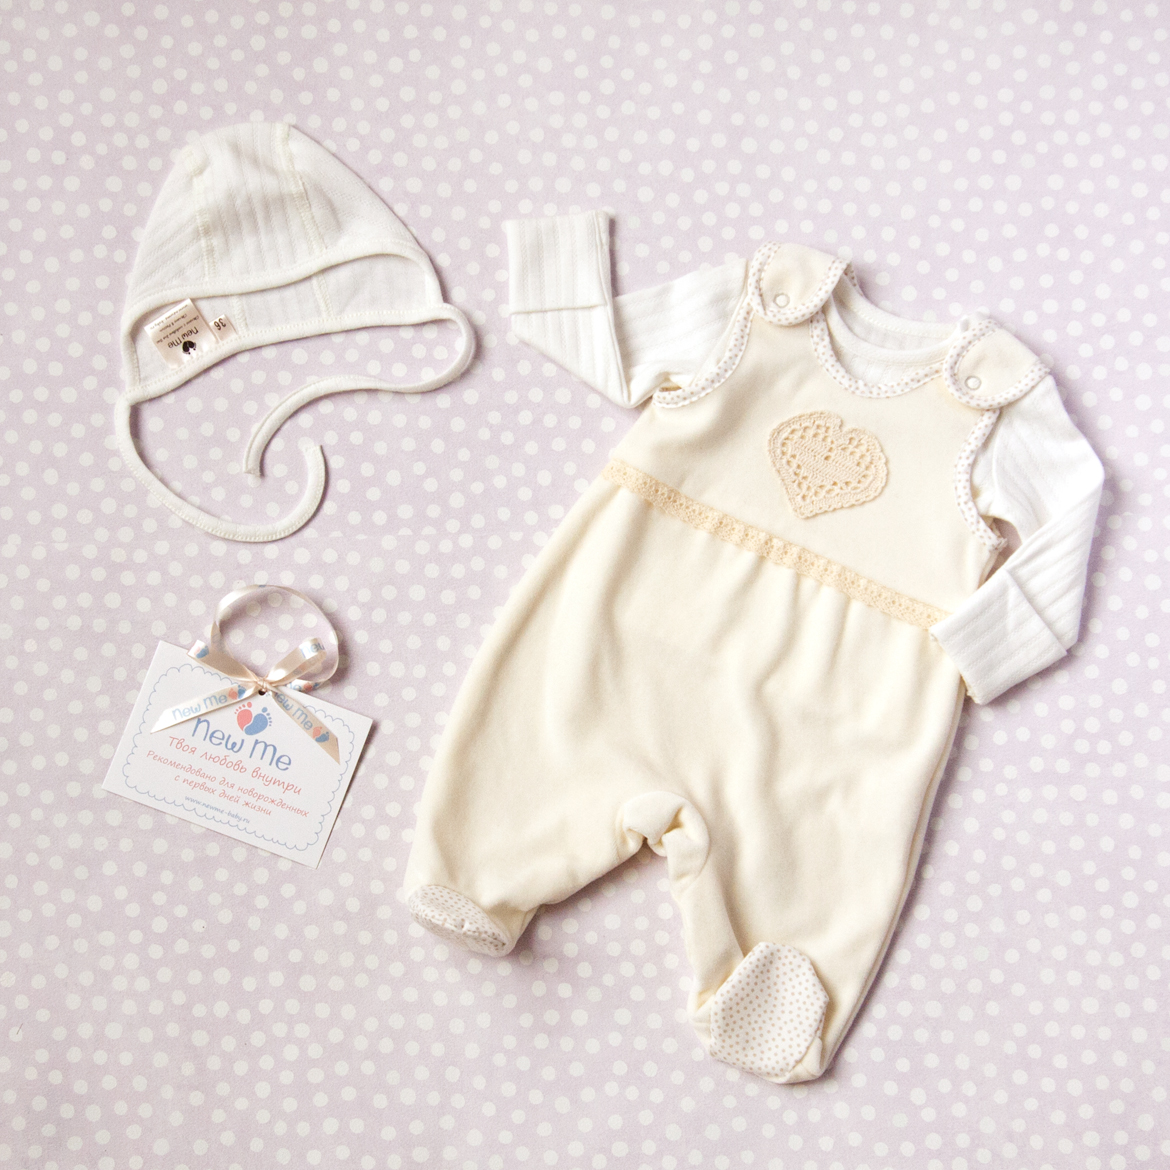 Финская верхняя одежда для новорожденных Kerry